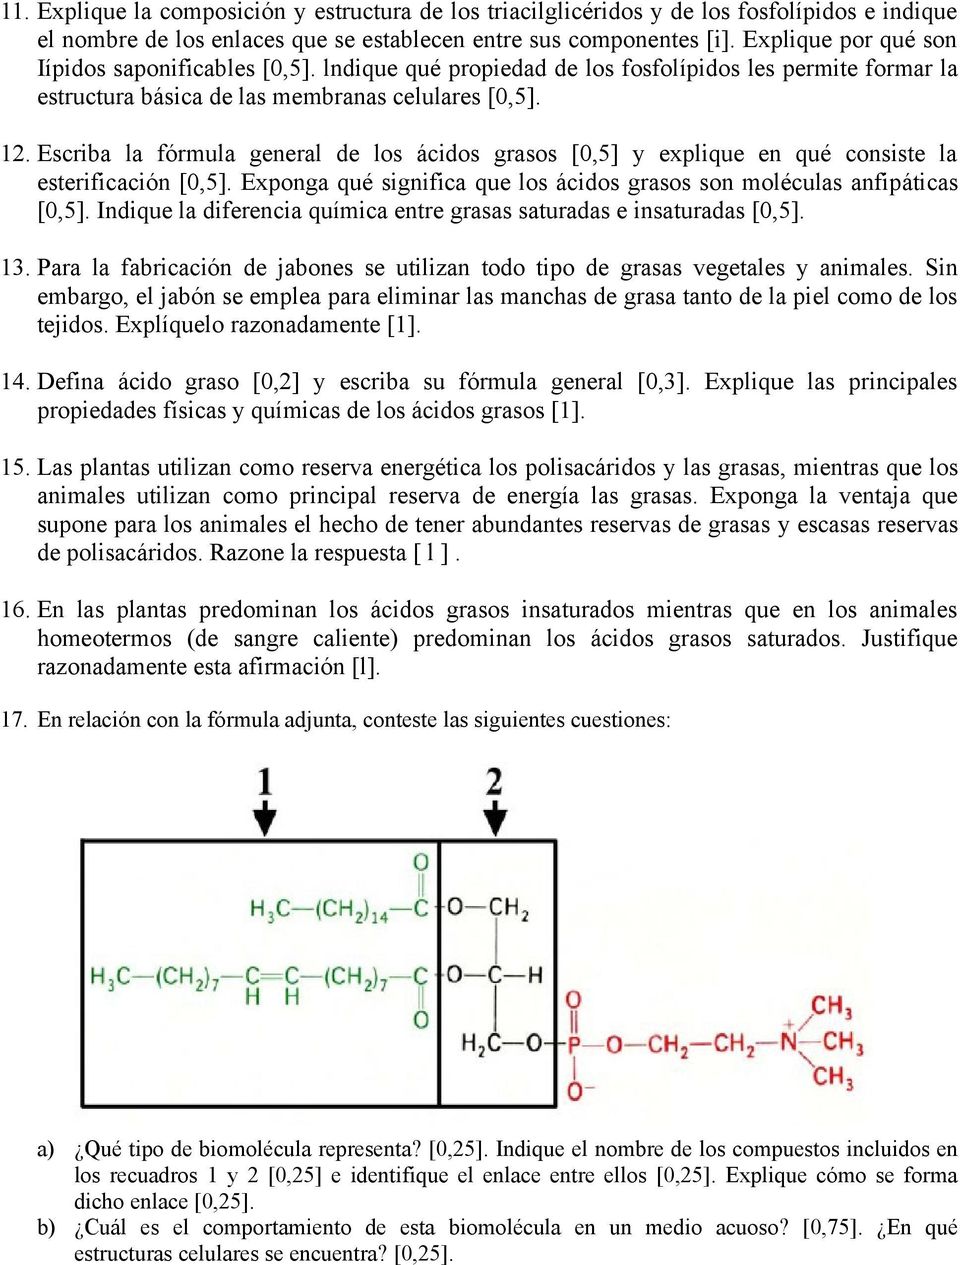 Escriba la fórmula general de los ácidos grasos [0,5] y explique en qué consiste la esterificación [0,5]. Exponga qué significa que los ácidos grasos son moléculas anfipáticas [0,5].